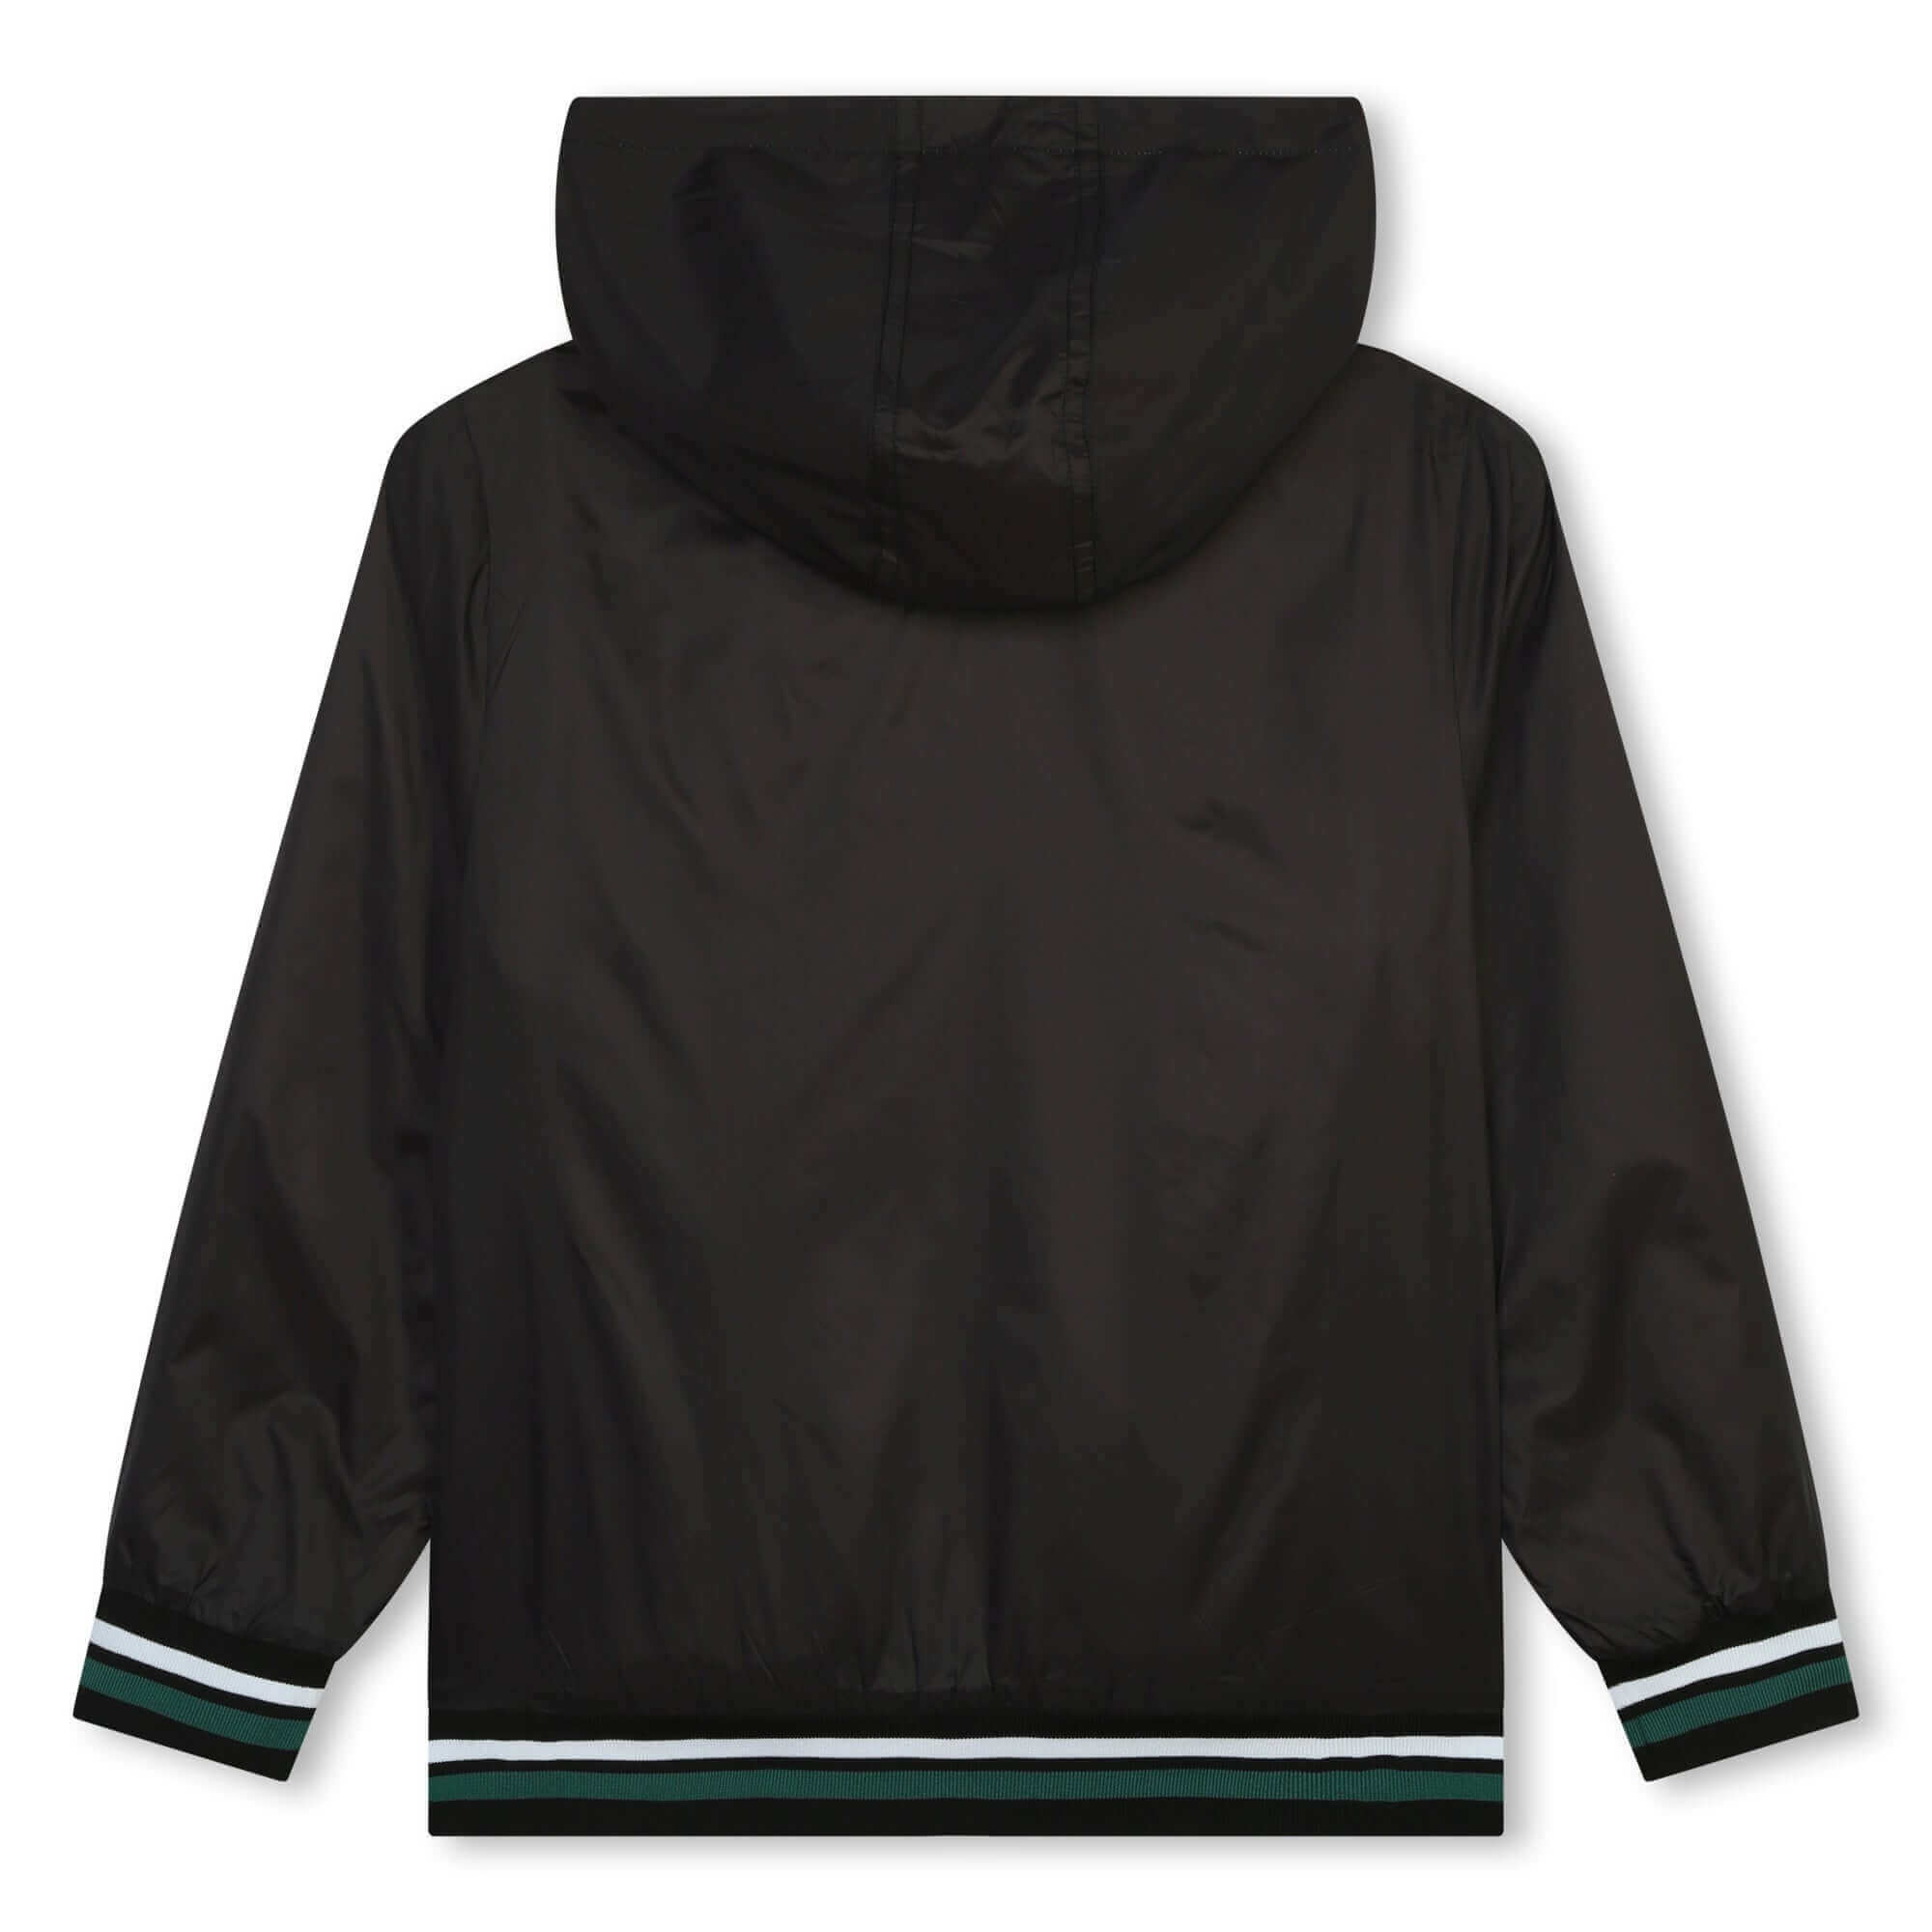 DKNY Boys Black Reversible Zip Up Jacket